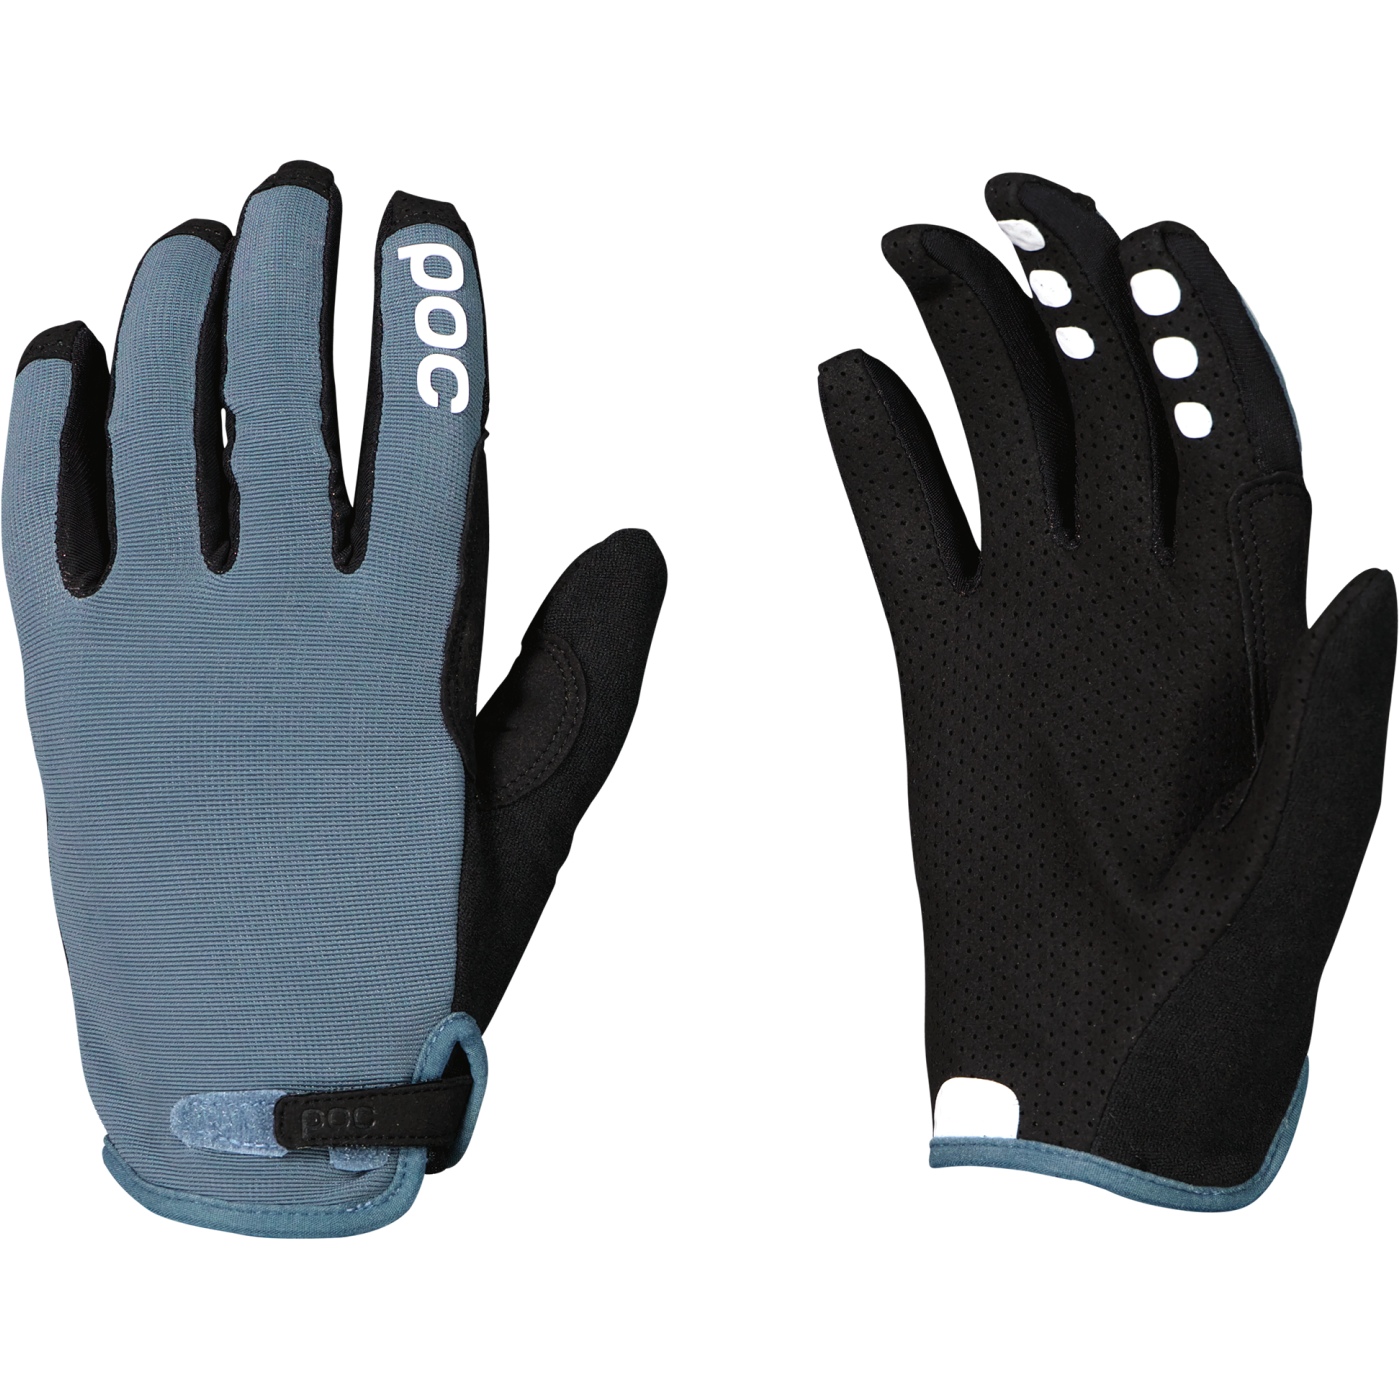 Produktbild von POC Resistance Enduro Adjustable Handschuhe - 1584 Calcite Blue